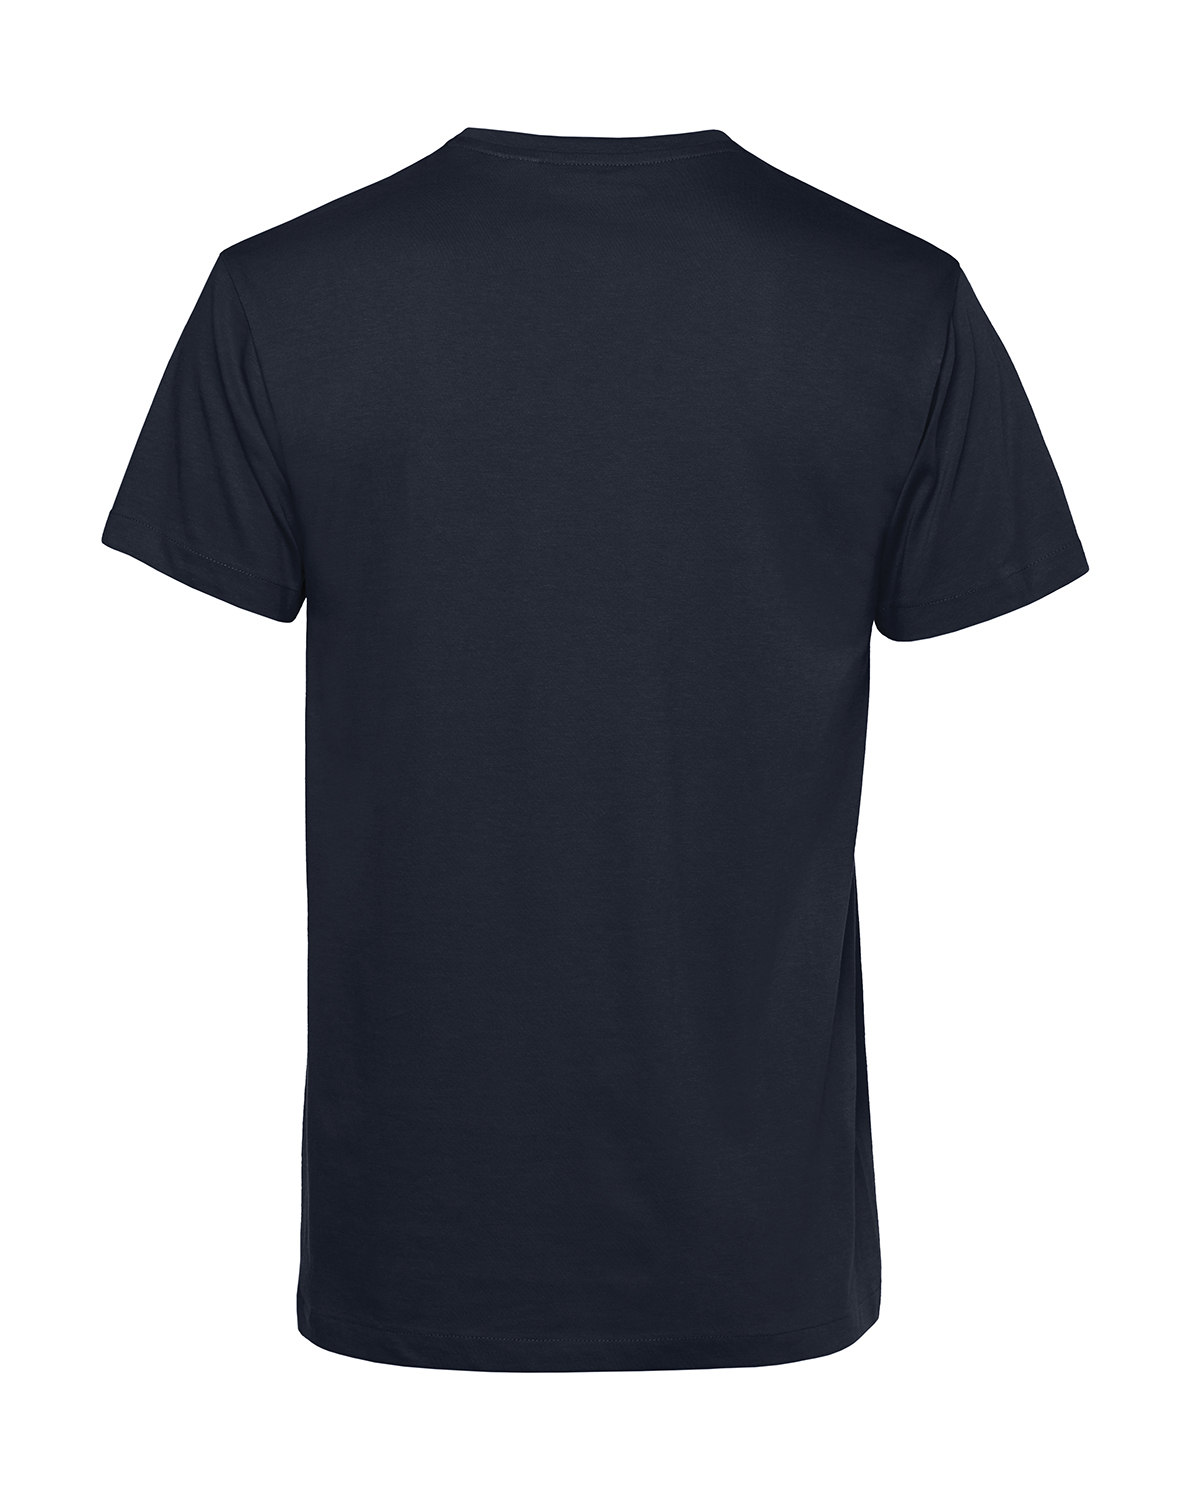 Nachhaltiges T-Shirt Herren 2Takt - Ganze Tankfüllung Star